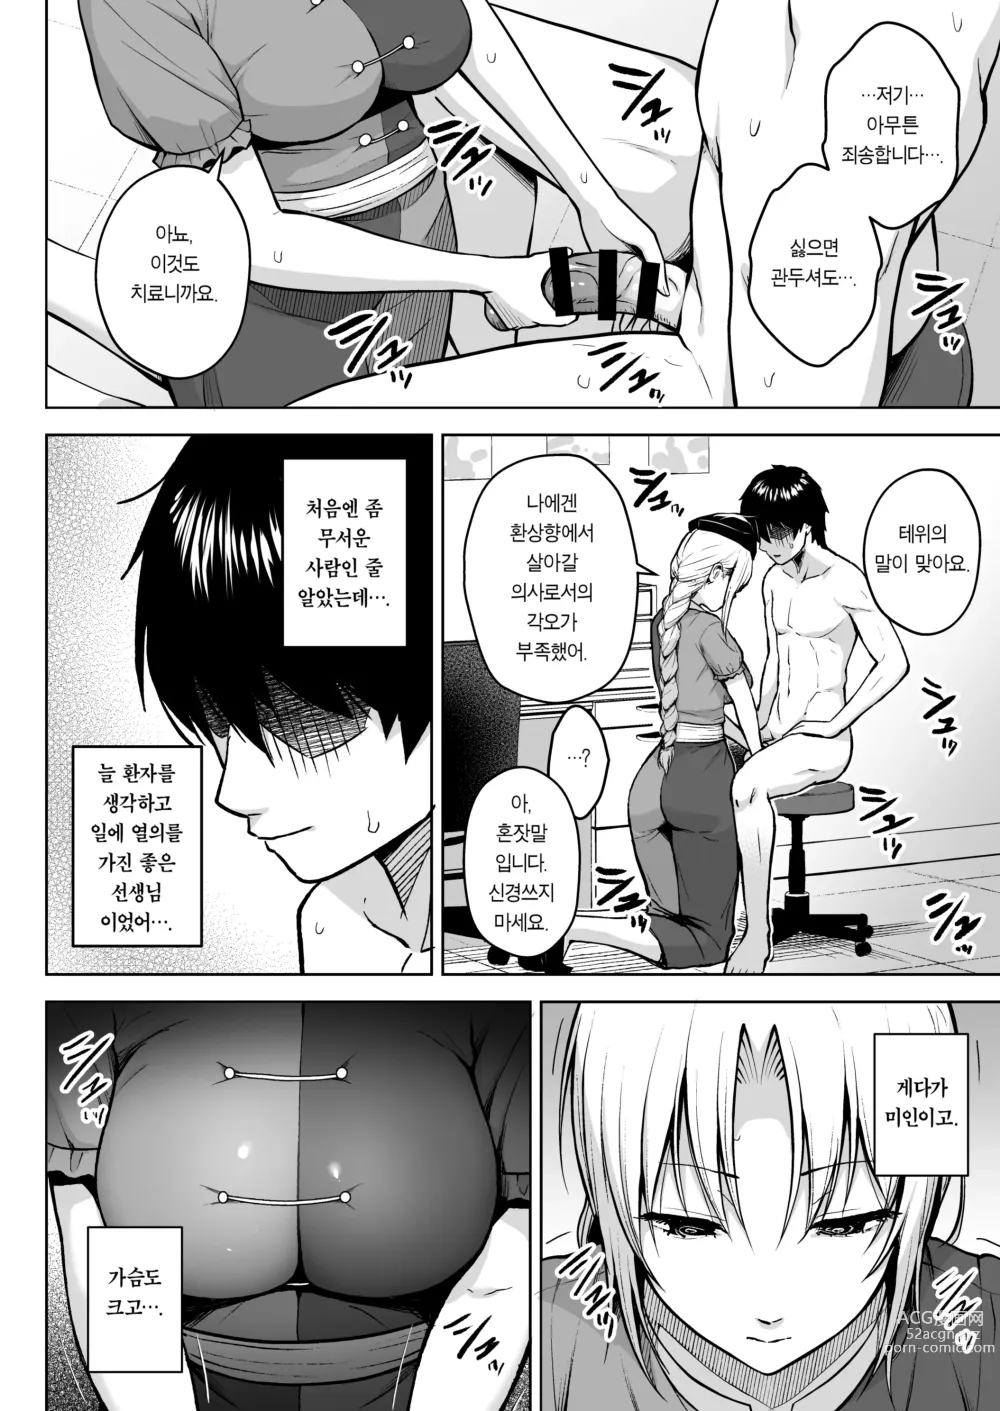 Page 8 of doujinshi 에이린이 가슴을 존나 괴롭혀져서 P컵이 되기까지의 이야기